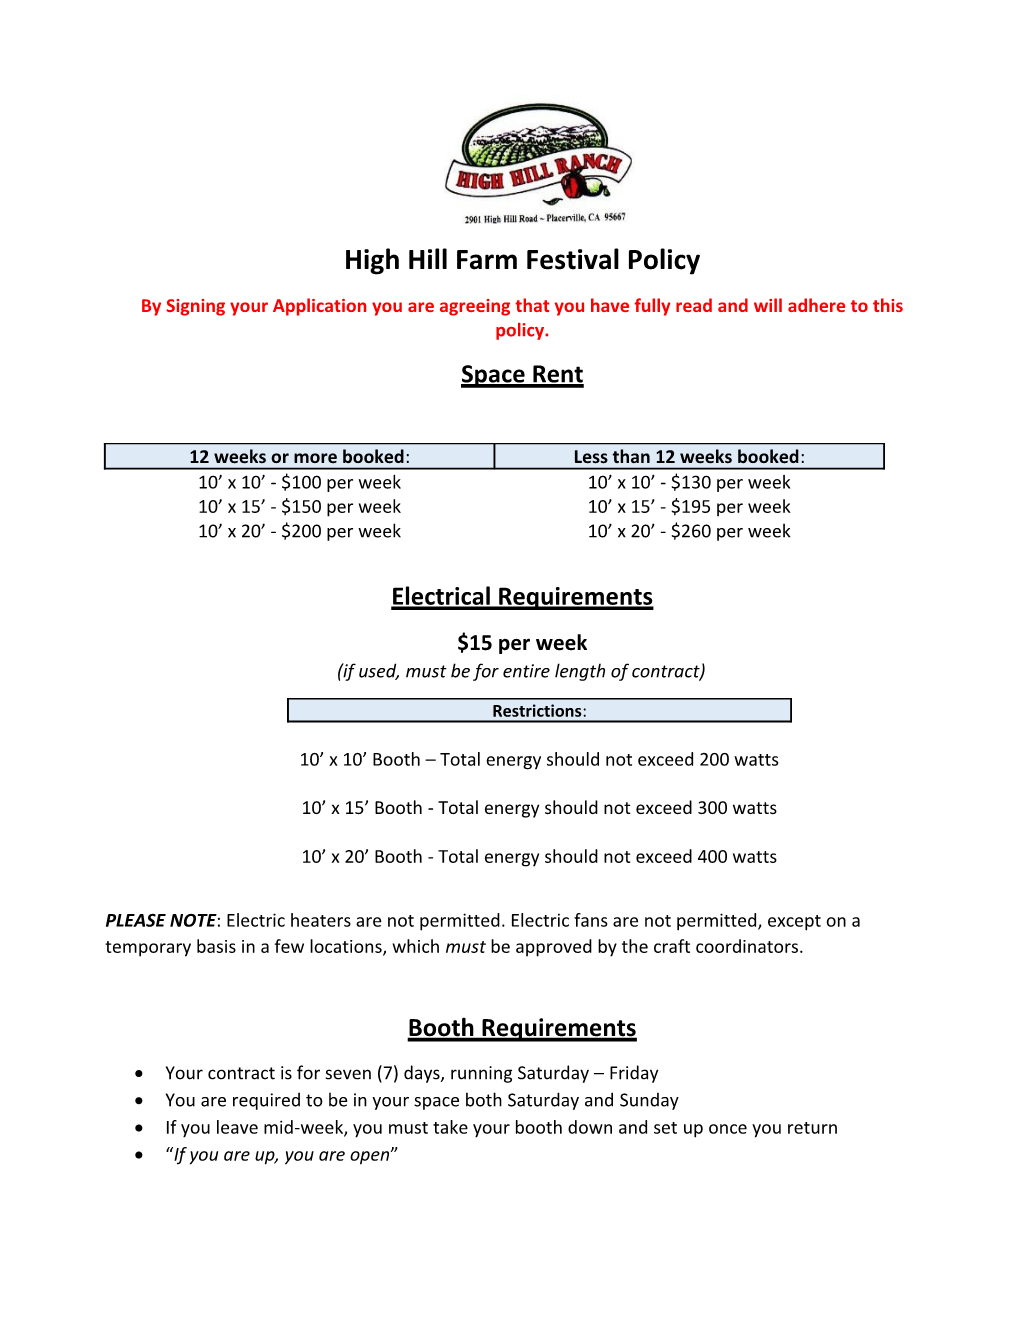 High Hill Farm Festival Policy